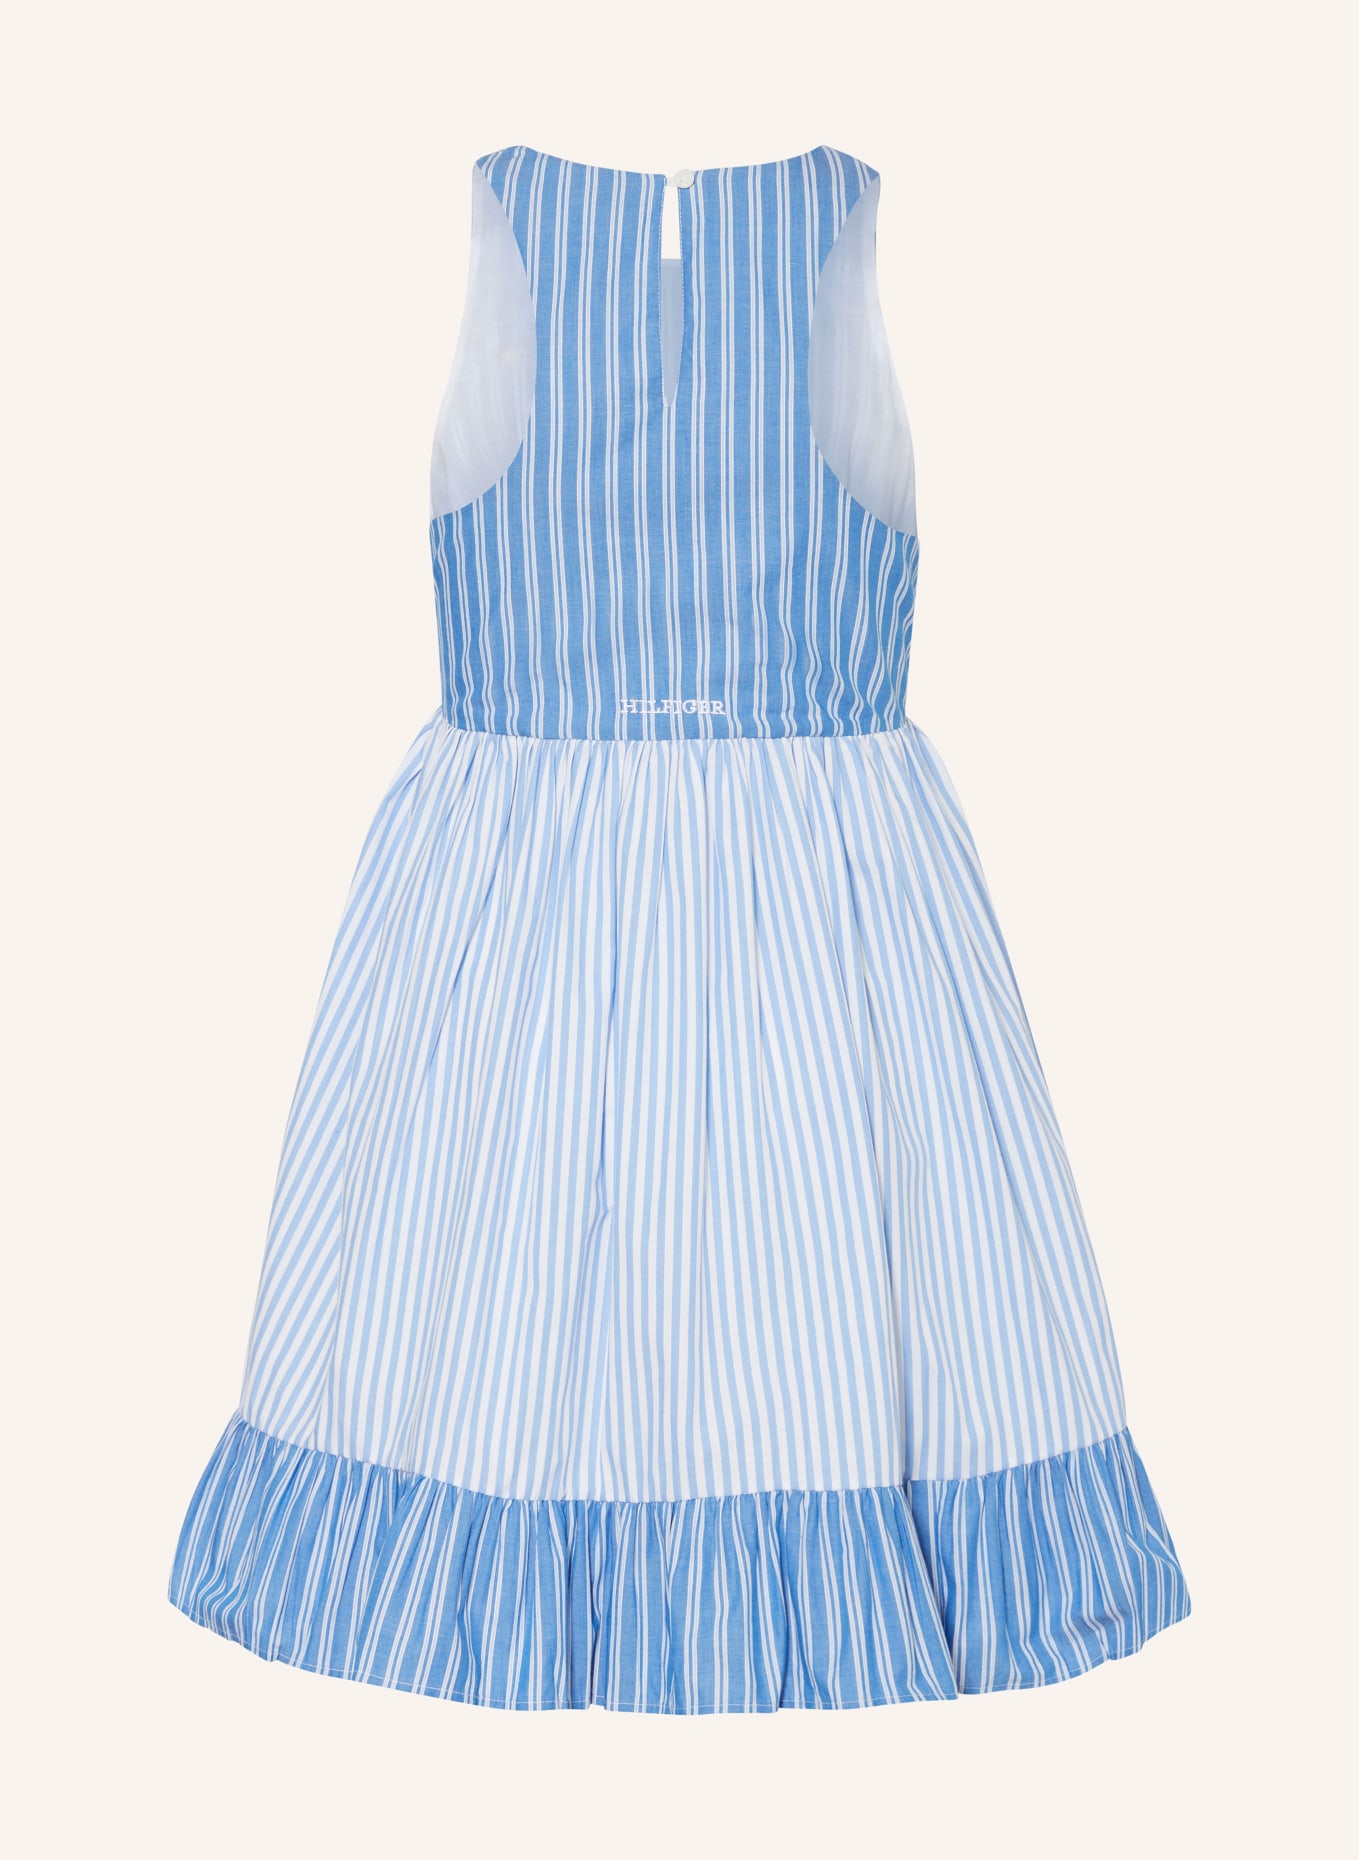 TOMMY HILFIGER Kleid, Farbe: BLAU/ WEISS (Bild 2)